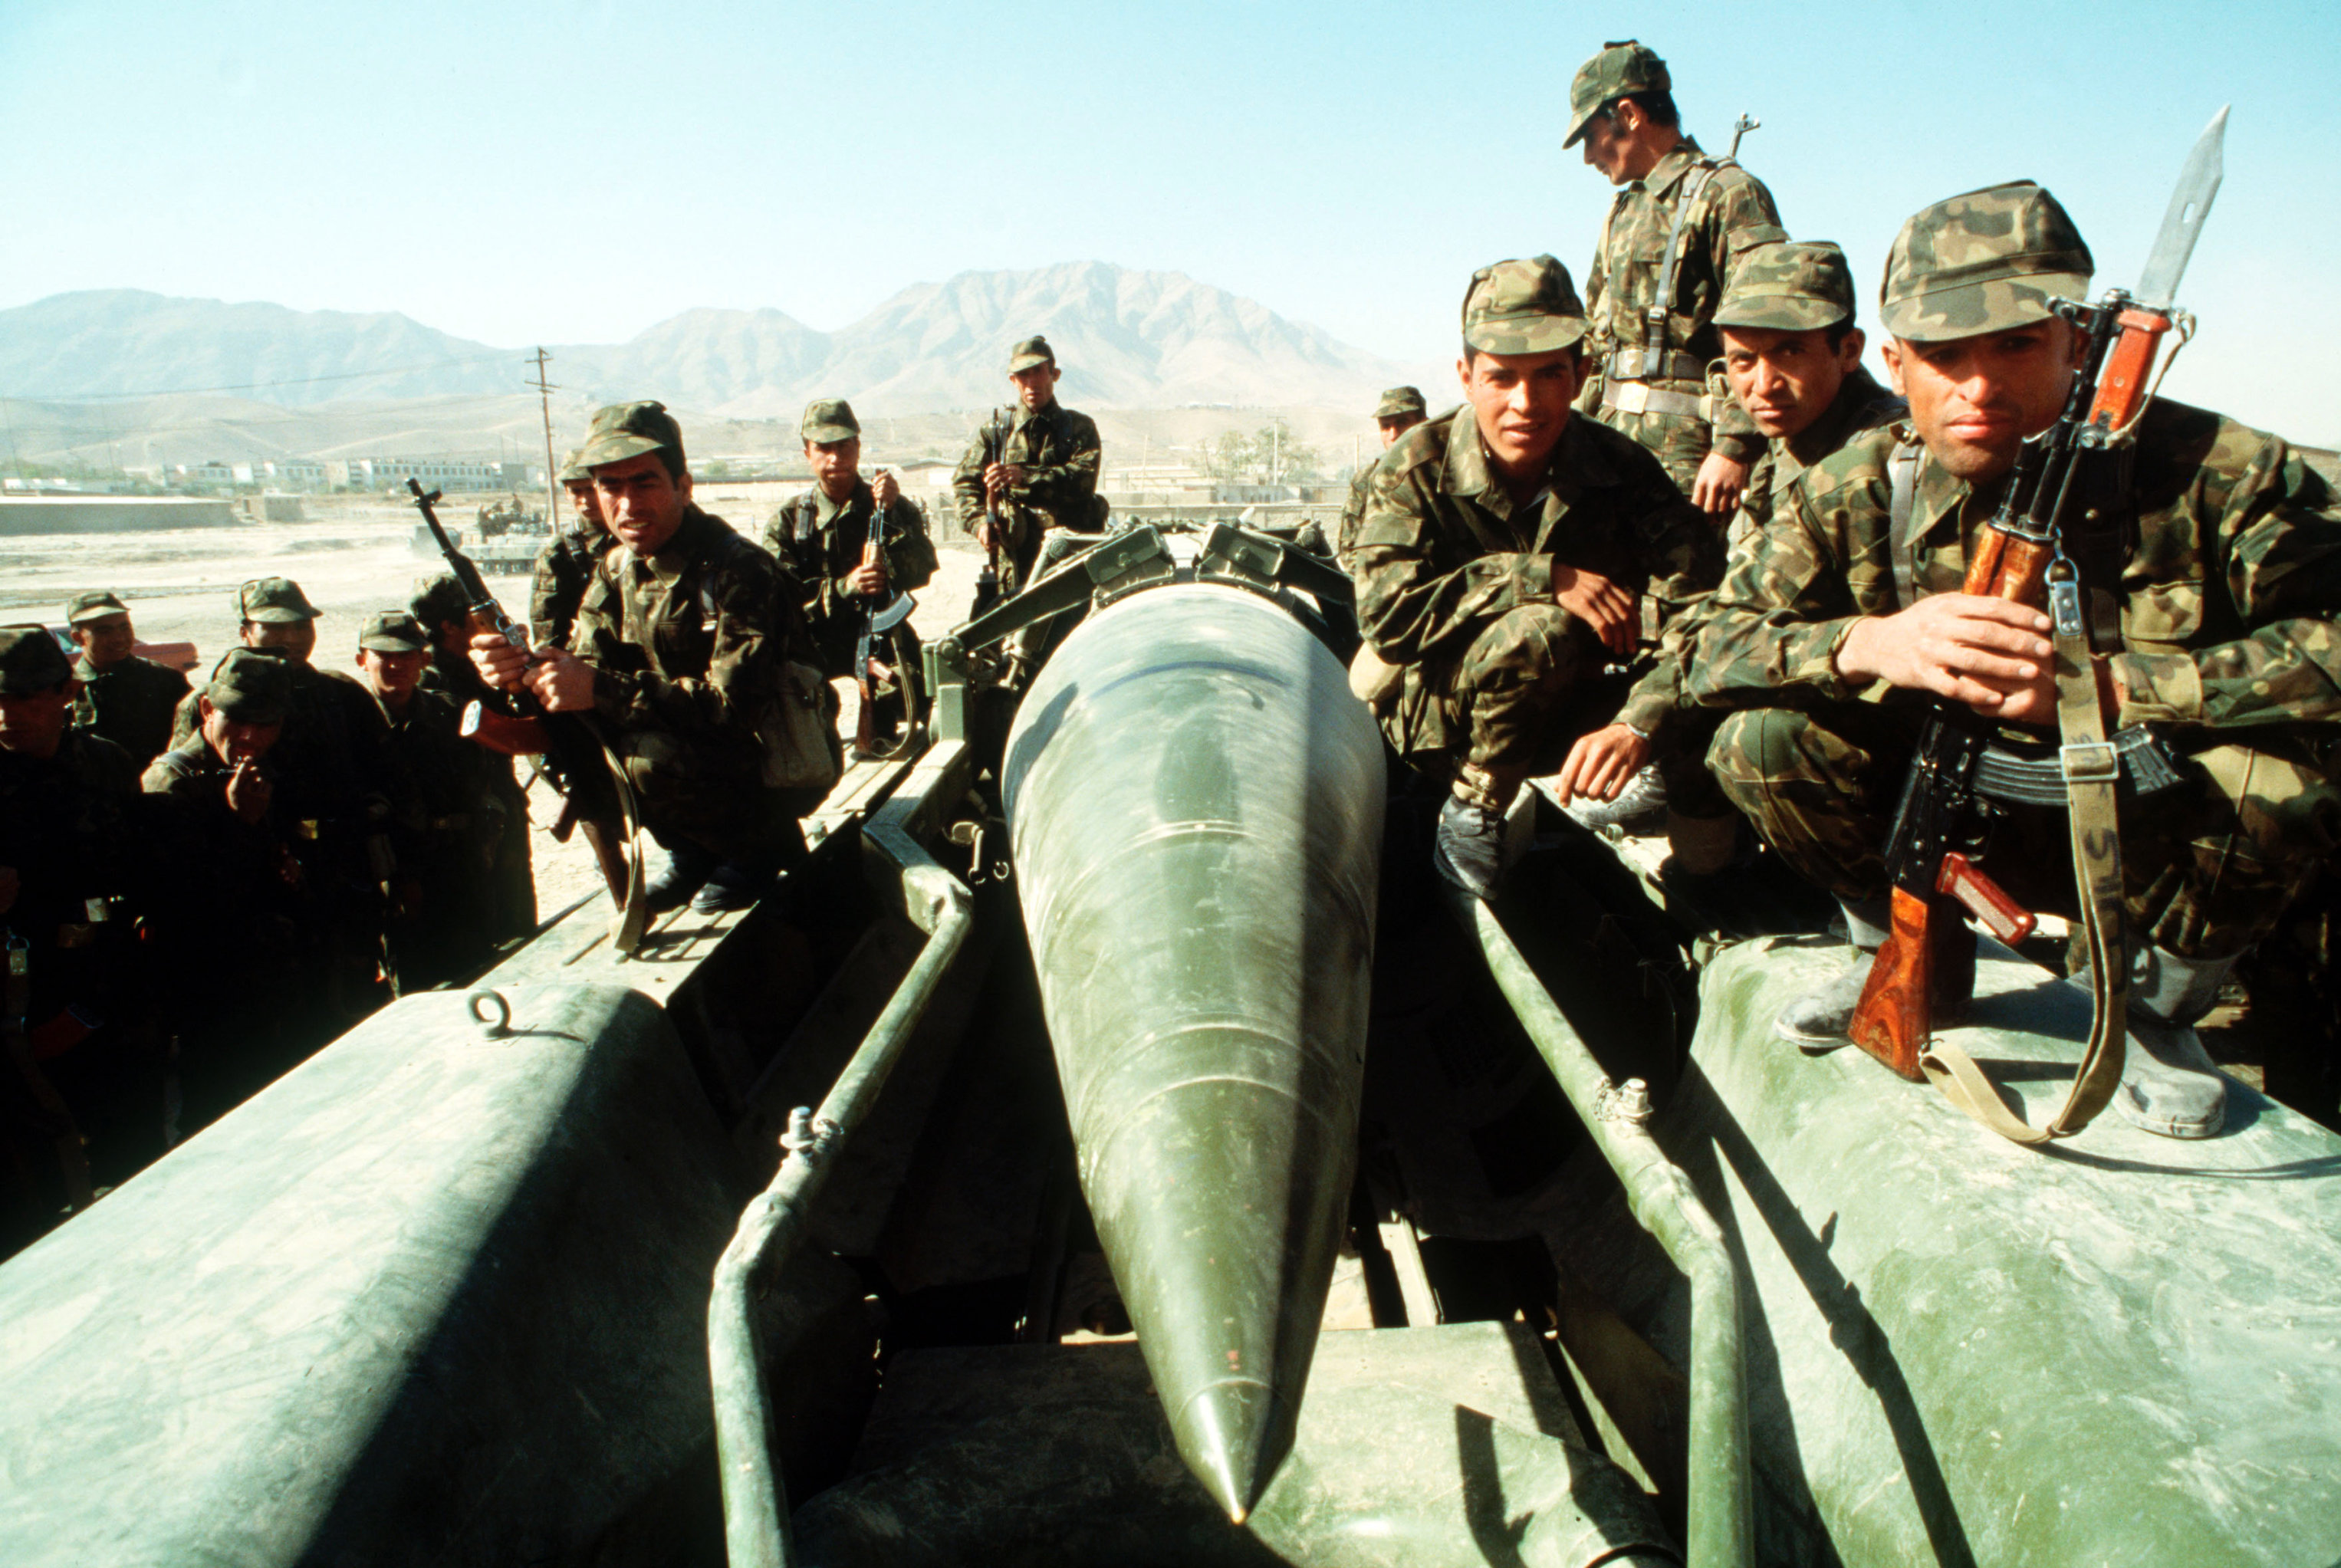 «Мерзость и грязь»: Россия критикует фильм о Красной армии в Афганистане (The Guardian, Великобритания)